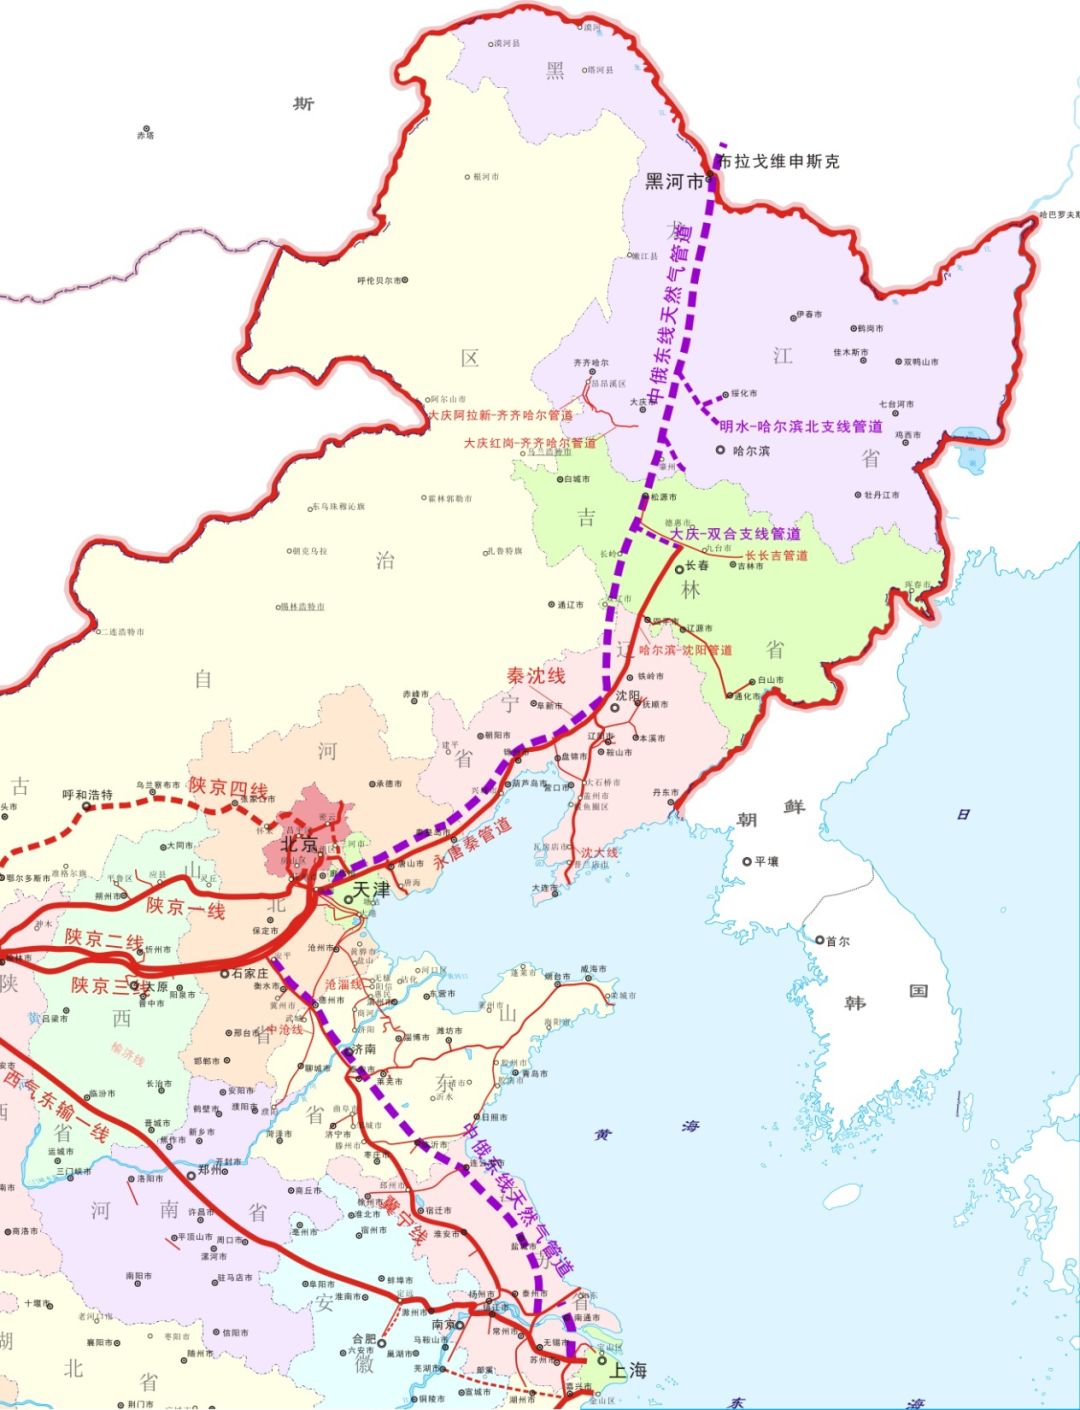 【12月1日进气投产】中俄东线天然气管道北段全线贯通